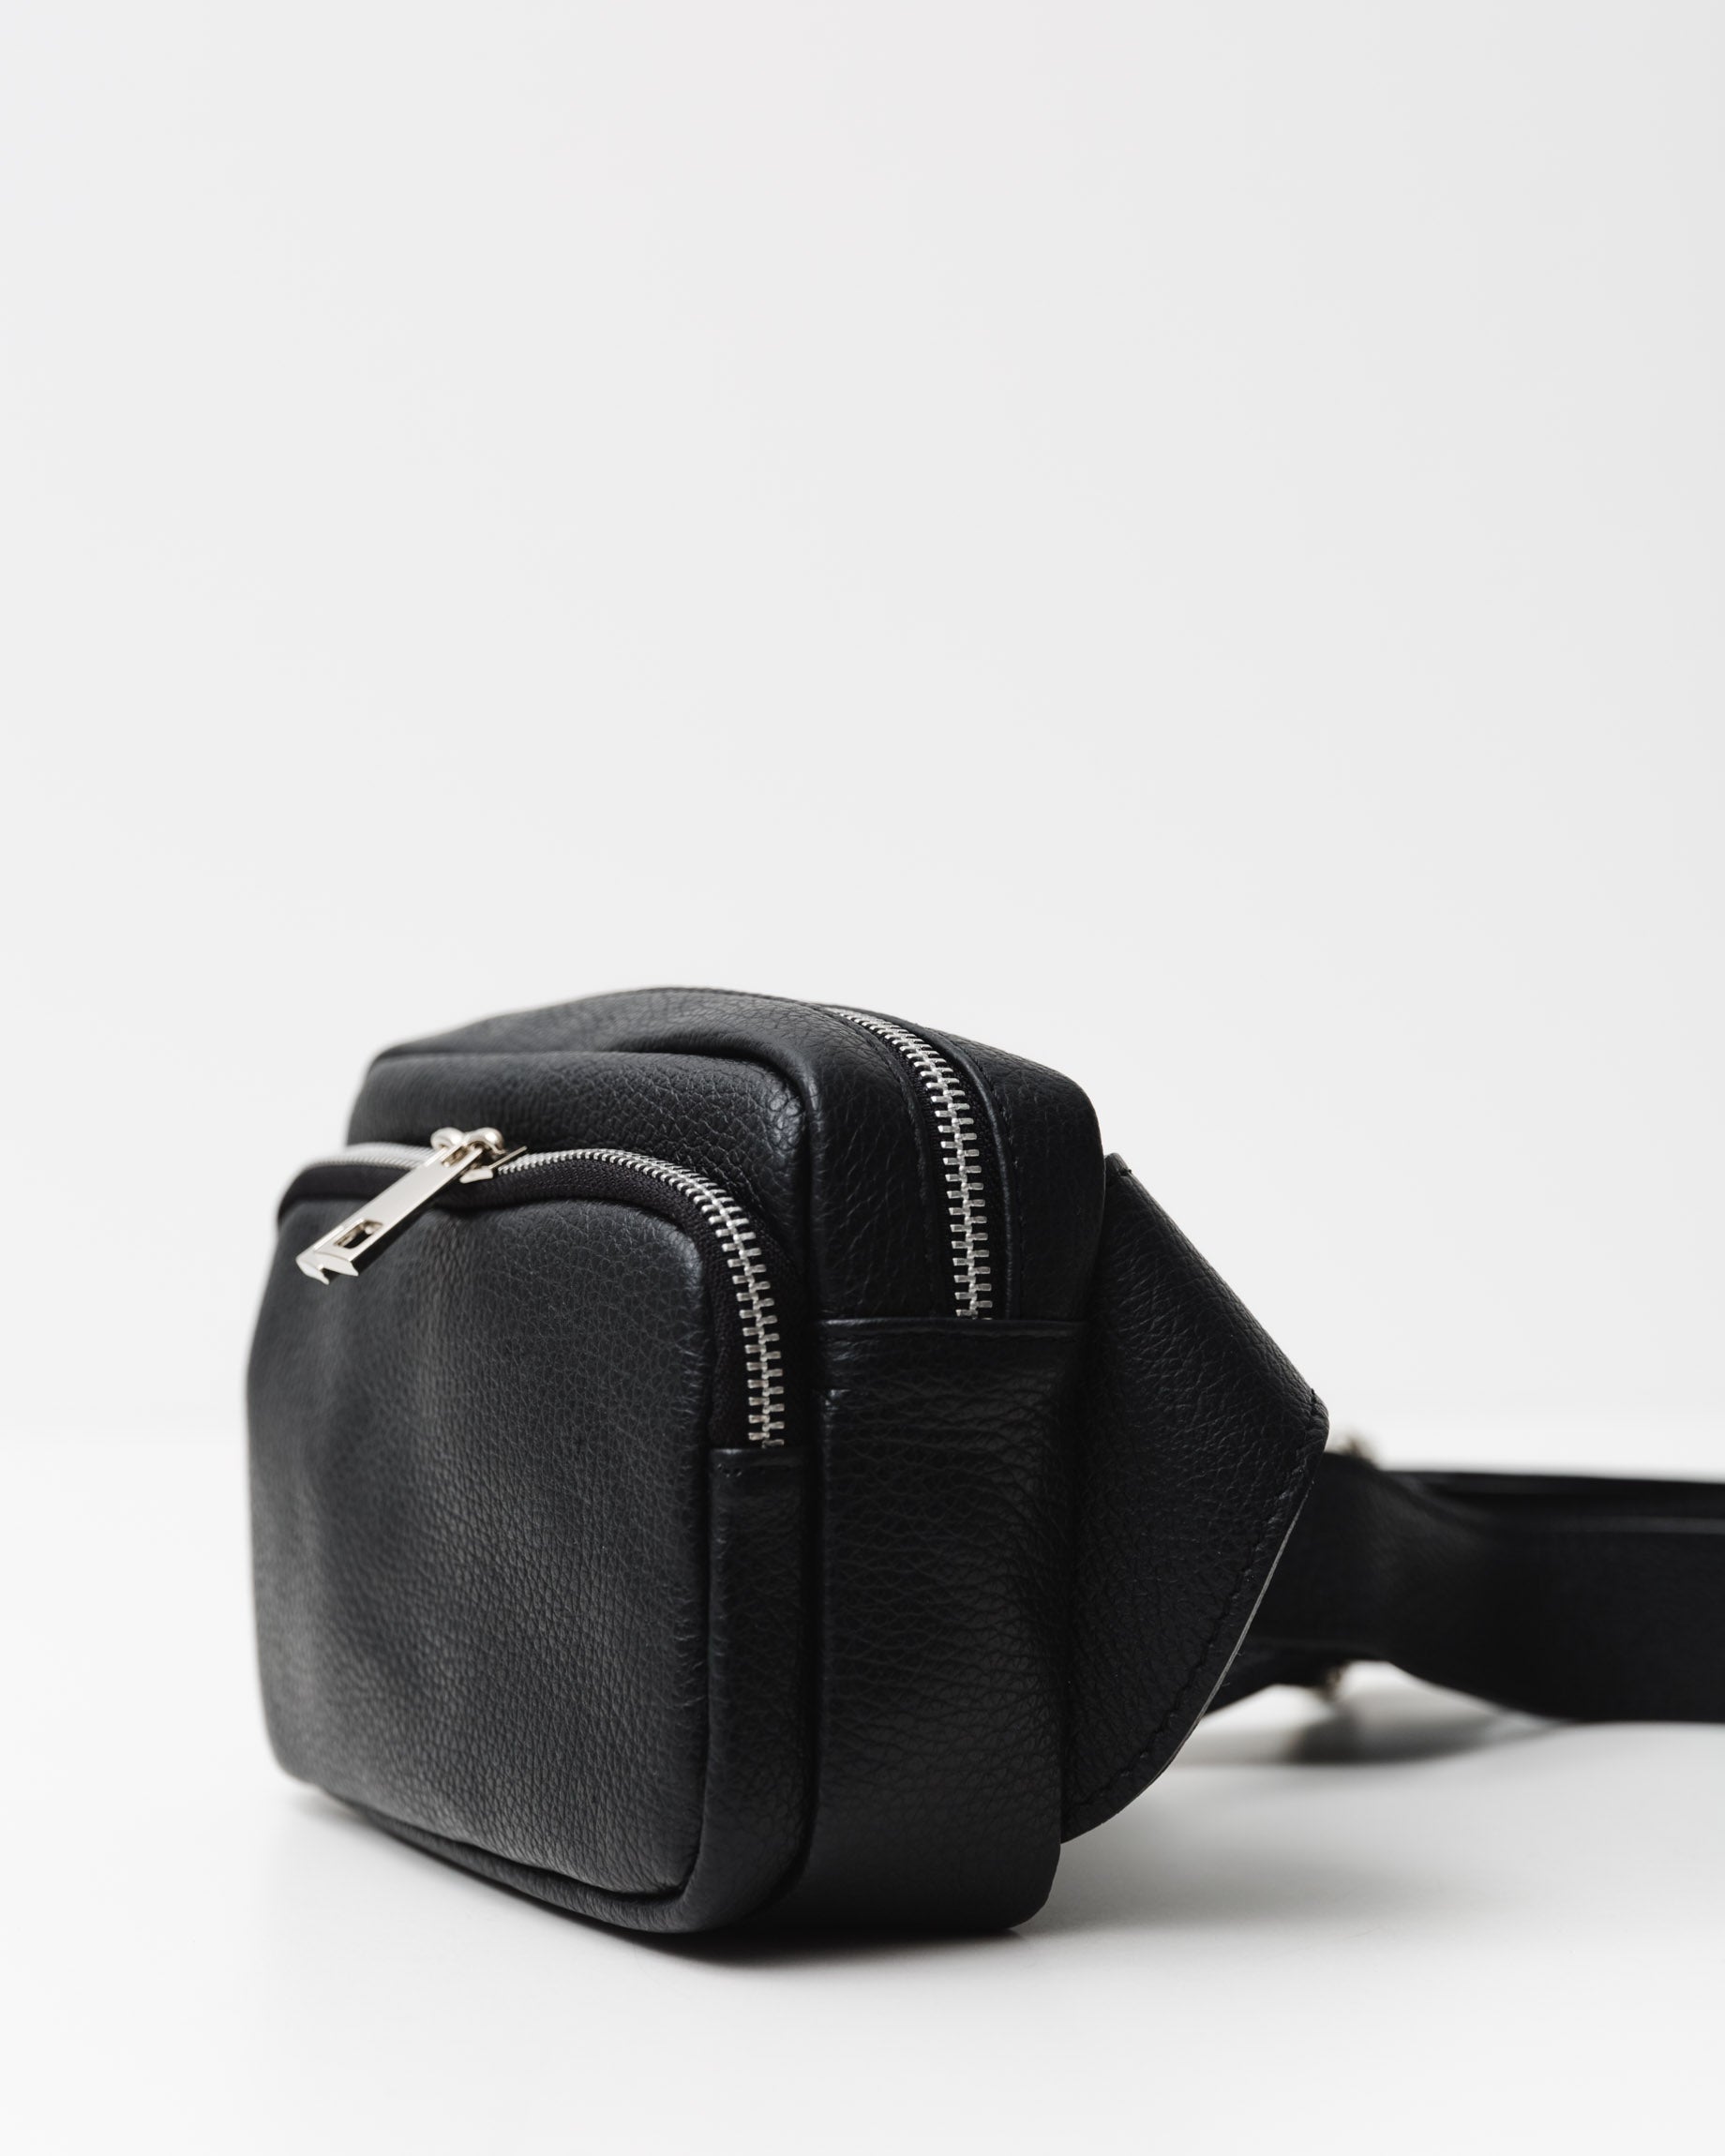 Crossbody Tasche mit verstellbarem Gurt - Broke + Schön#farbe_black